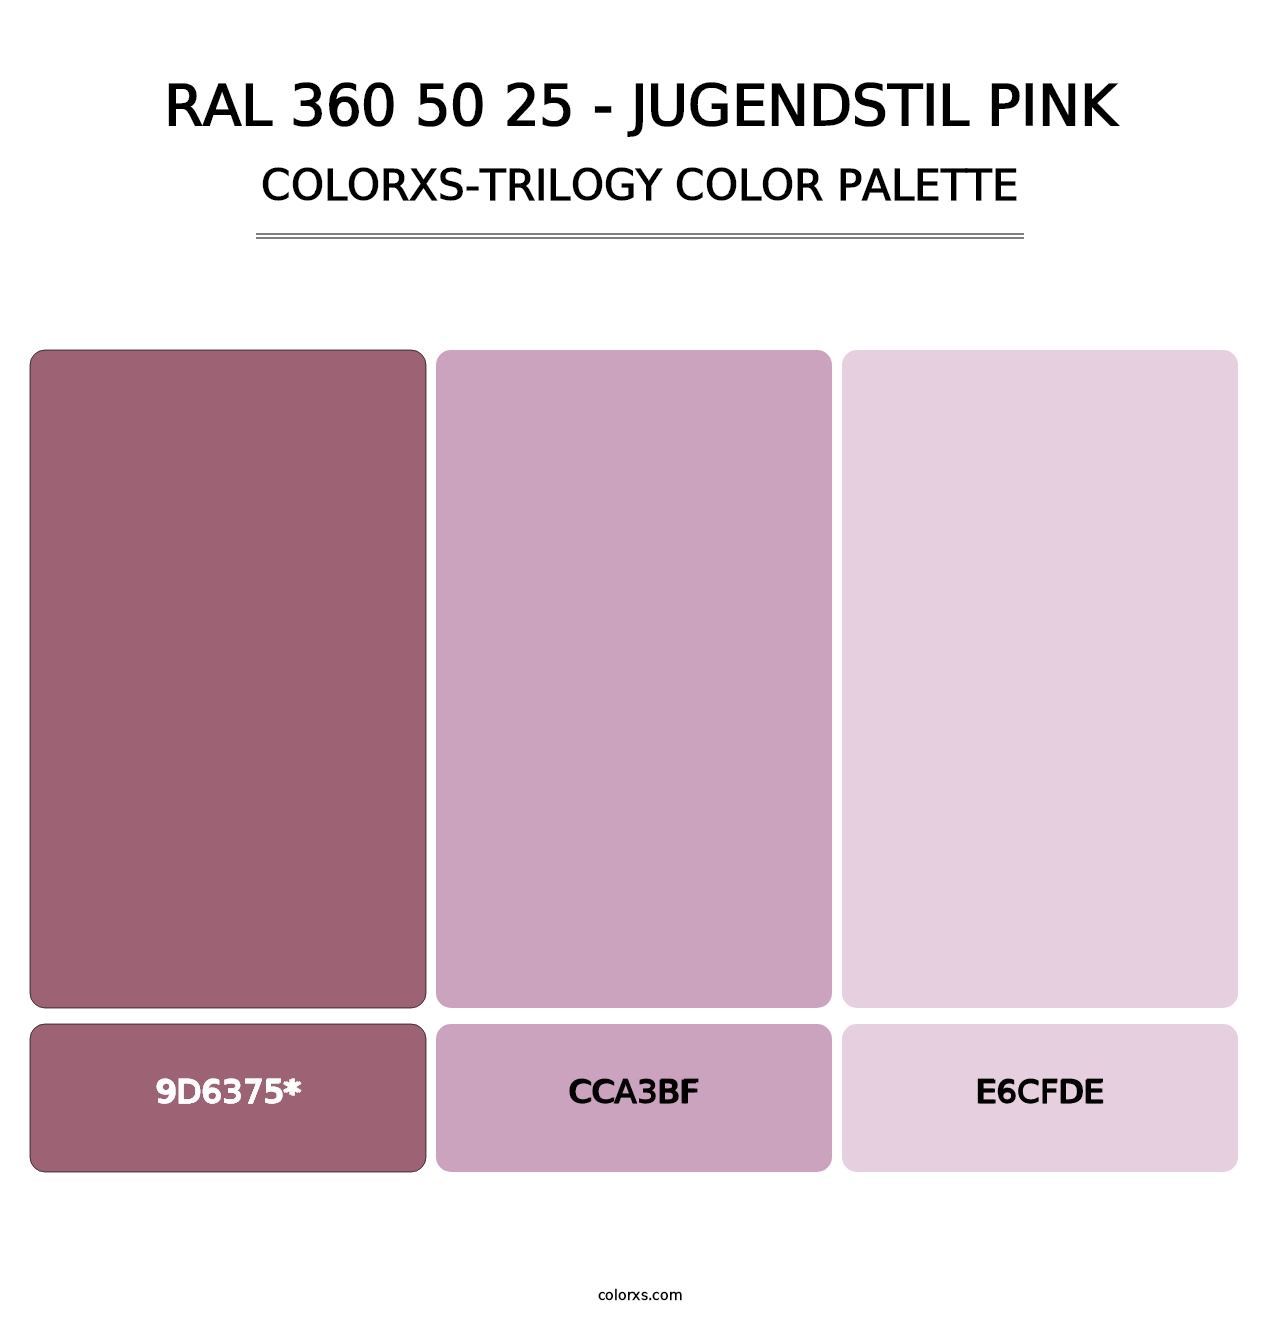 RAL 360 50 25 - Jugendstil Pink - Colorxs Trilogy Palette